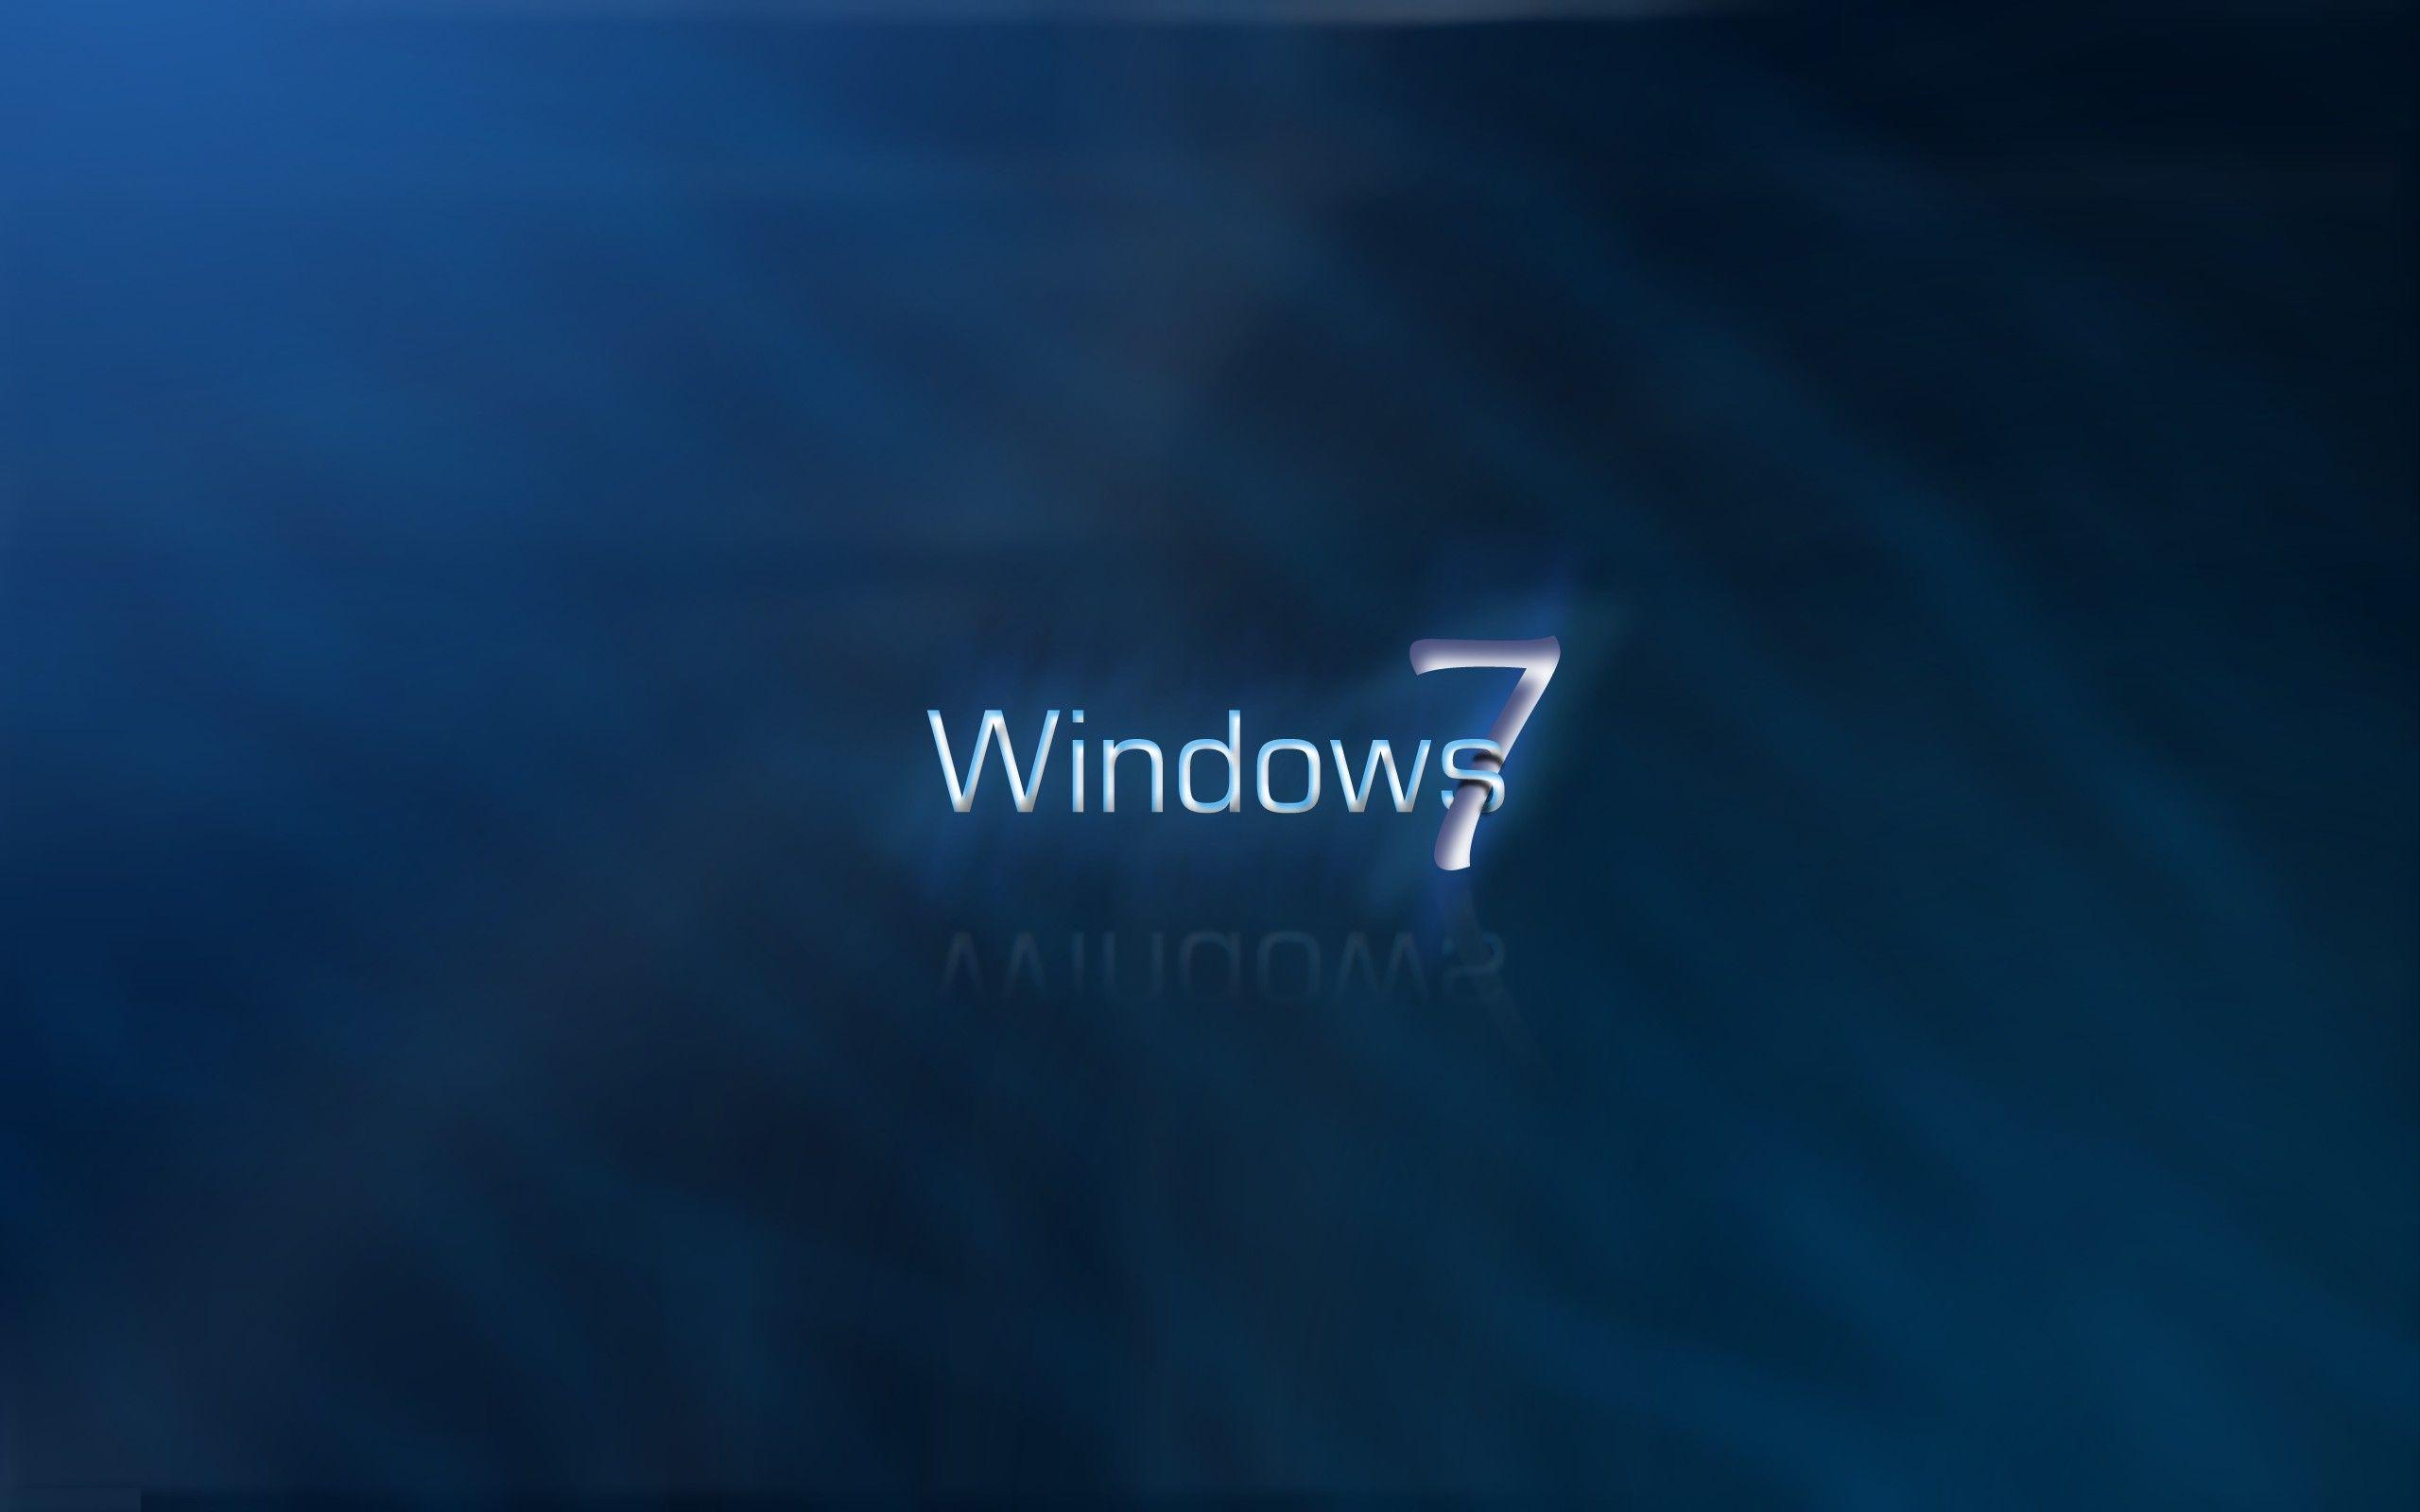 Hình nền Windows 7 sẽ khiến cho màn hình của bạn trở nên sống động và đẹp mắt hơn bao giờ hết. Với nhiều lựa chọn khác nhau và đa dạng về chủ đề, bạn sẽ tìm thấy được hình nền ưng ý nhất cho mình. Hãy cập nhật ngay để trải nghiệm điều đó!